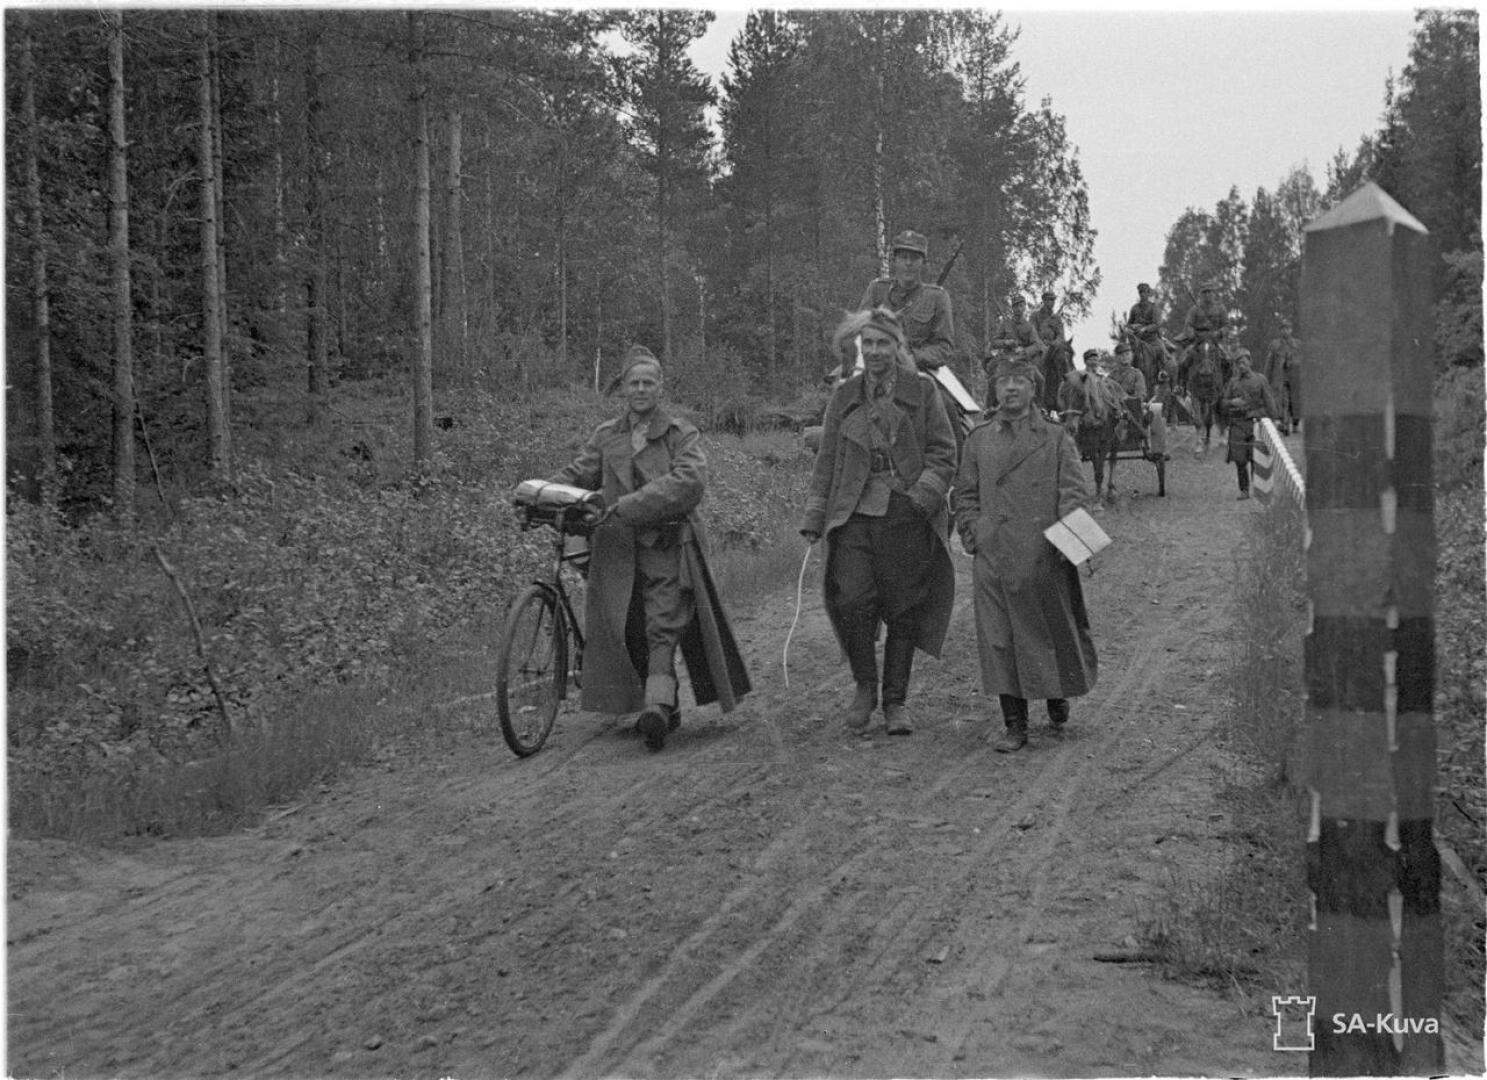 Everstiluutnantti Susitaipaleen esikunta marssi valtakunnan rajan yli Värtsilän Ilomäessä heinäkuun alussa 1941.